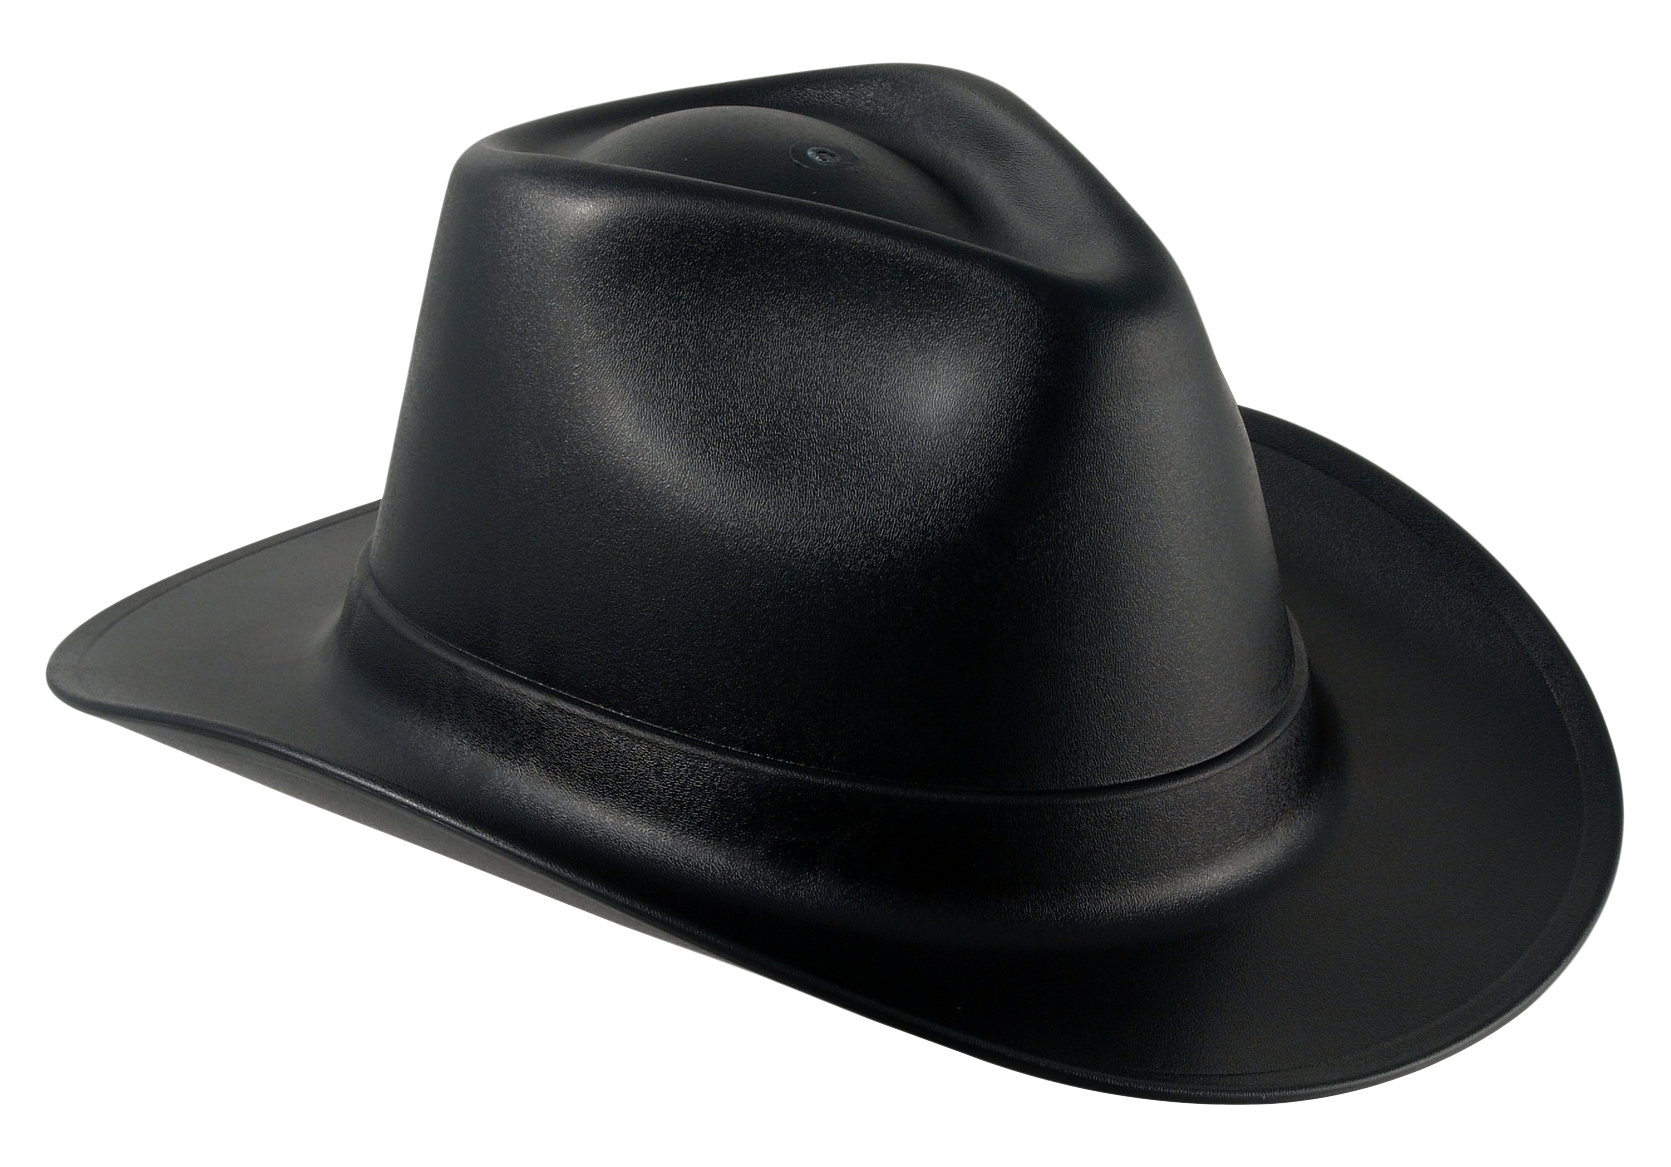 Cowboy Hat Png Transparent Image - Hat, Transparent background PNG HD thumbnail